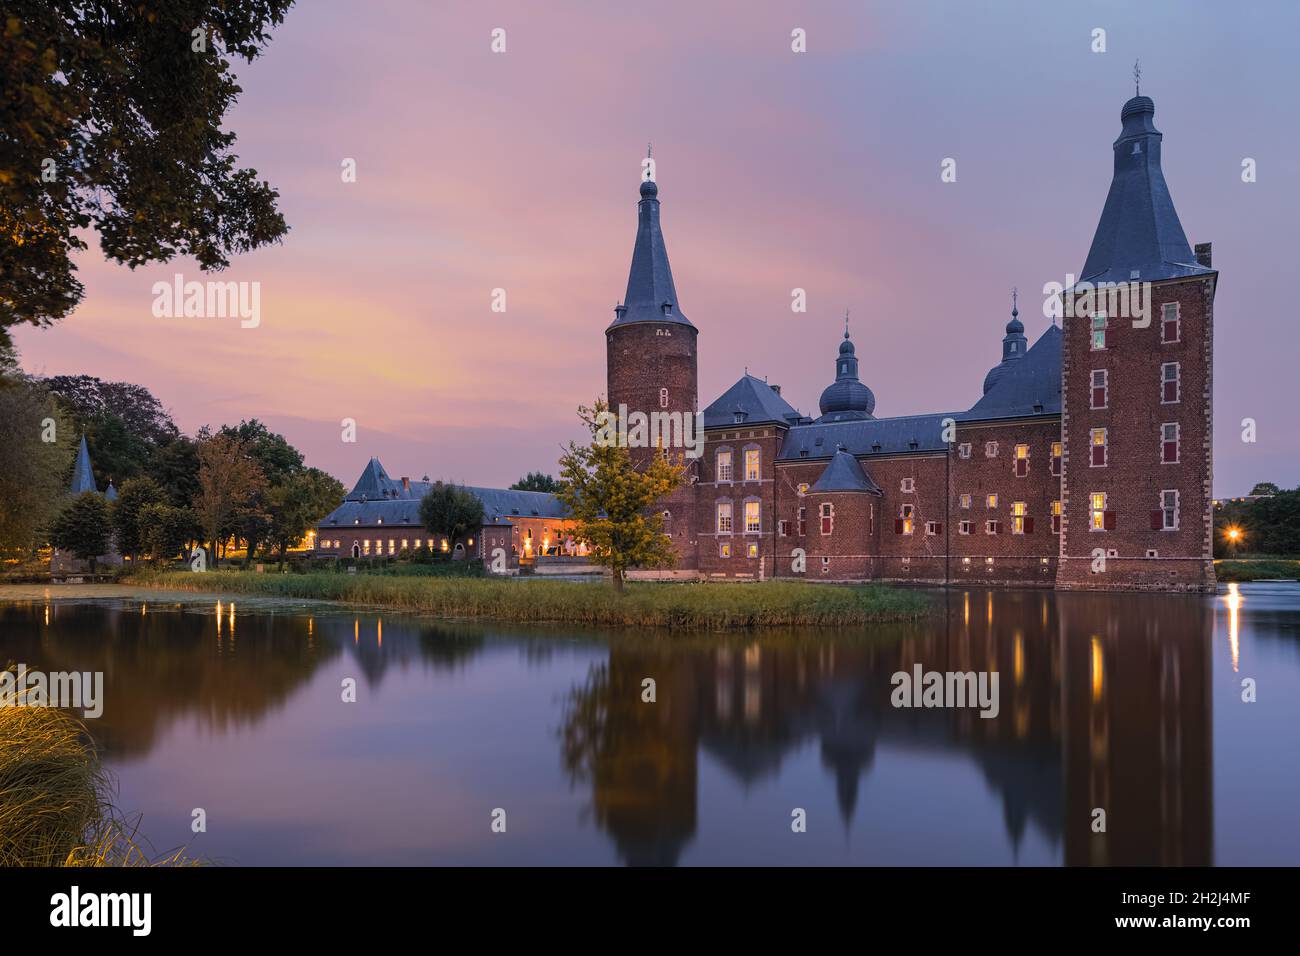 Il castello di Hoensbroek è uno dei castelli più grandi dei Paesi Bassi. Si trova a Hoensbroek, una città della provincia del Limburgo. Questo imponente wat Foto Stock